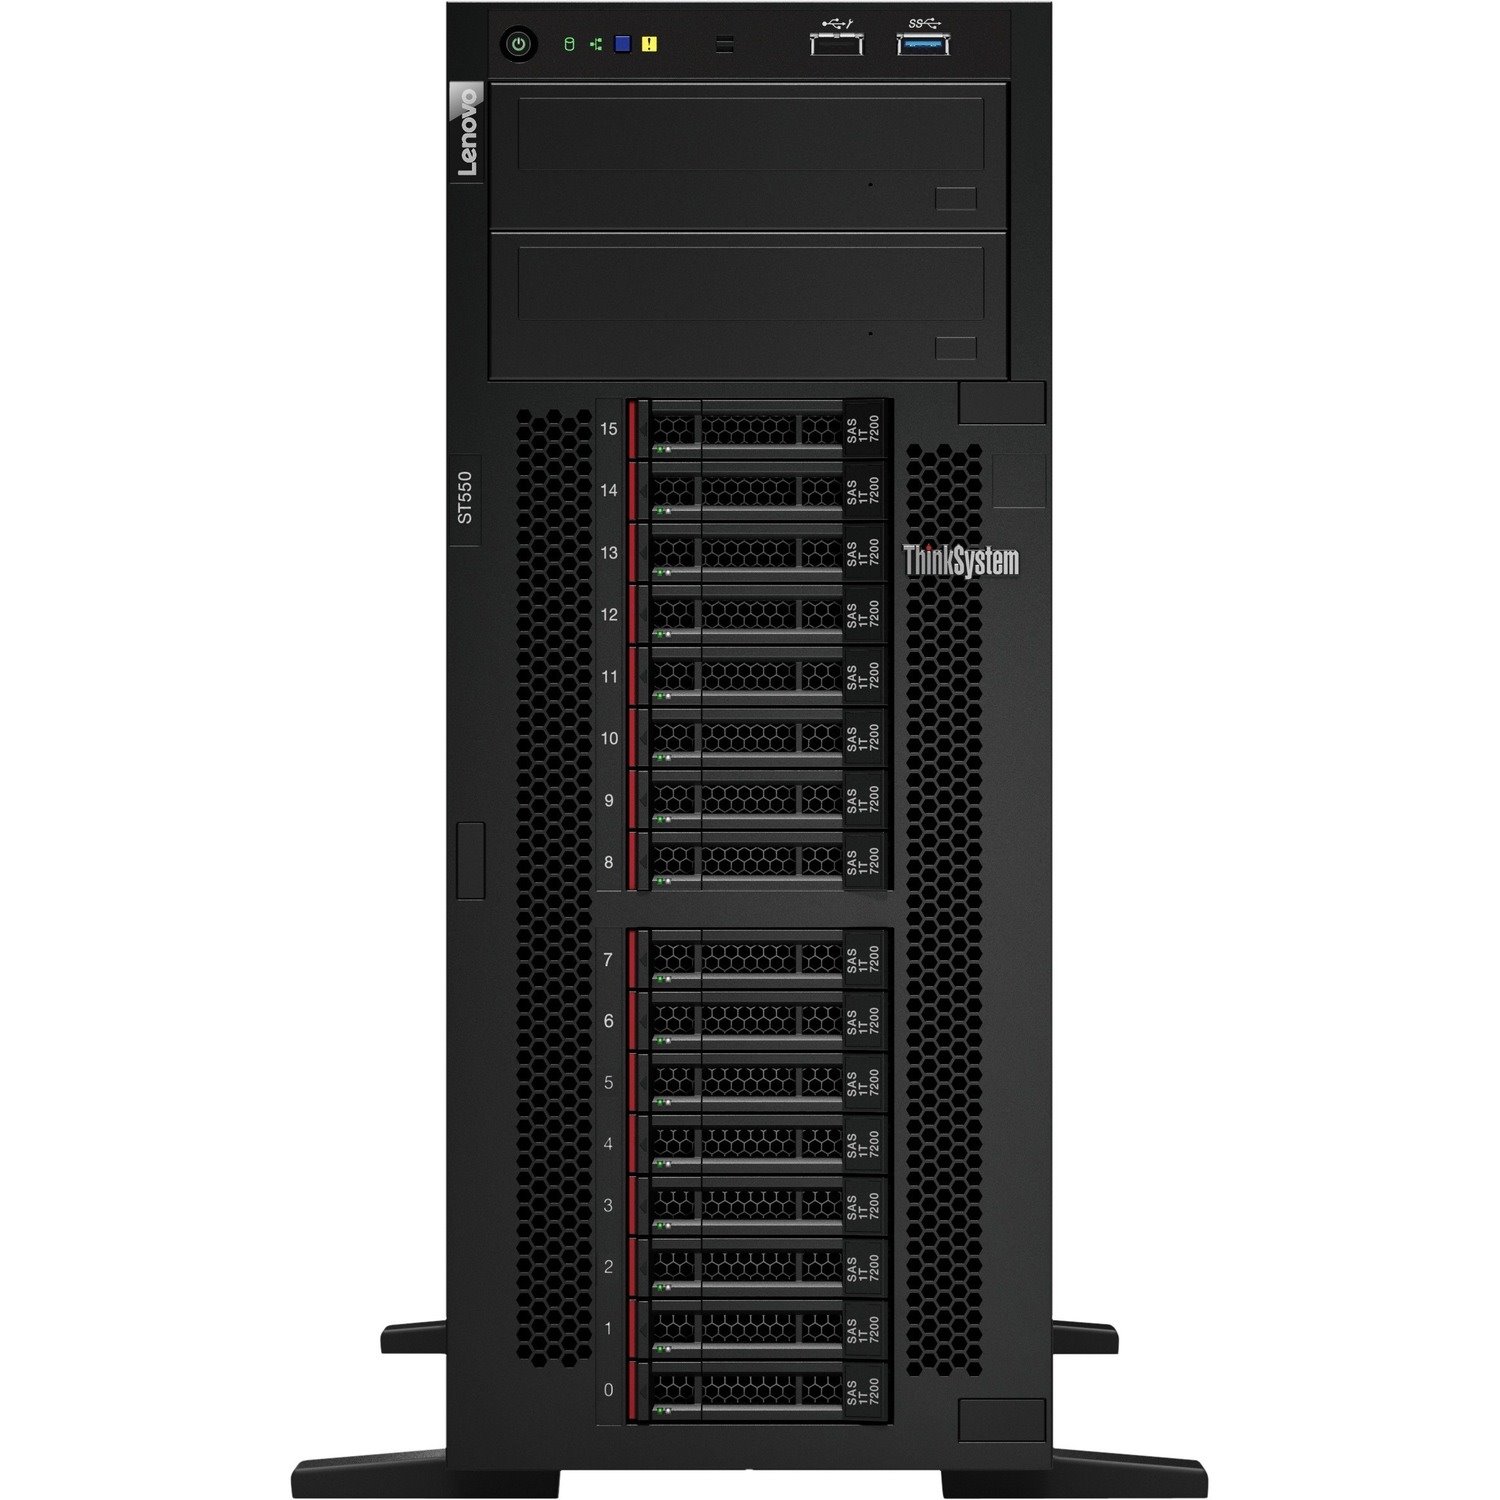 Lenovo ThinkSystem ST550 7X10A0A2AU 4U Tower Server - 1 x Intel Xeon Silver 4210 2.20 GHz - 16 GB RAM - 12Gb/s SAS, Serial ATA/600 Controller